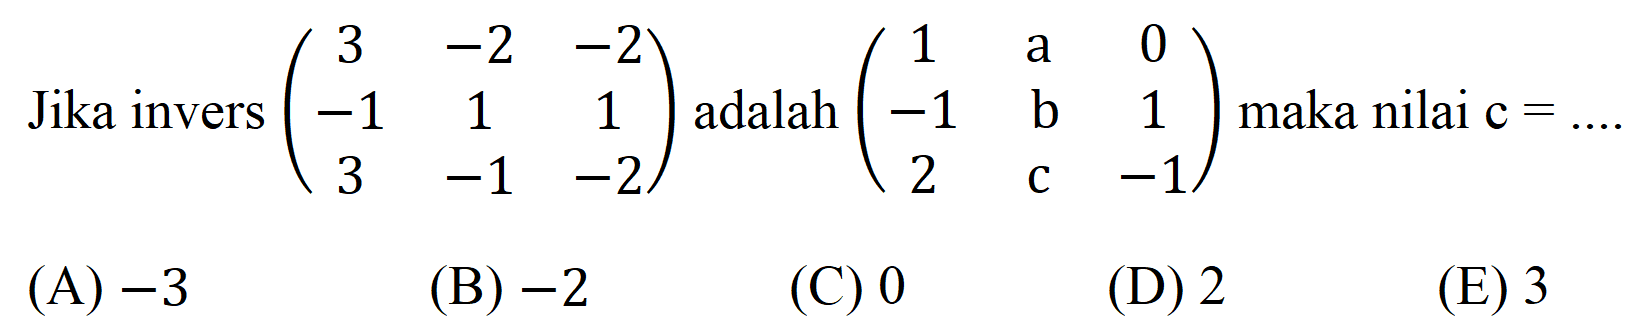 Jika invers  (3  -2  -2  -1  1  1  3  -1  -2)  adalah  (1   { a )  0  -1  b  1  2  c  -1)  maka nilai  c=... 
